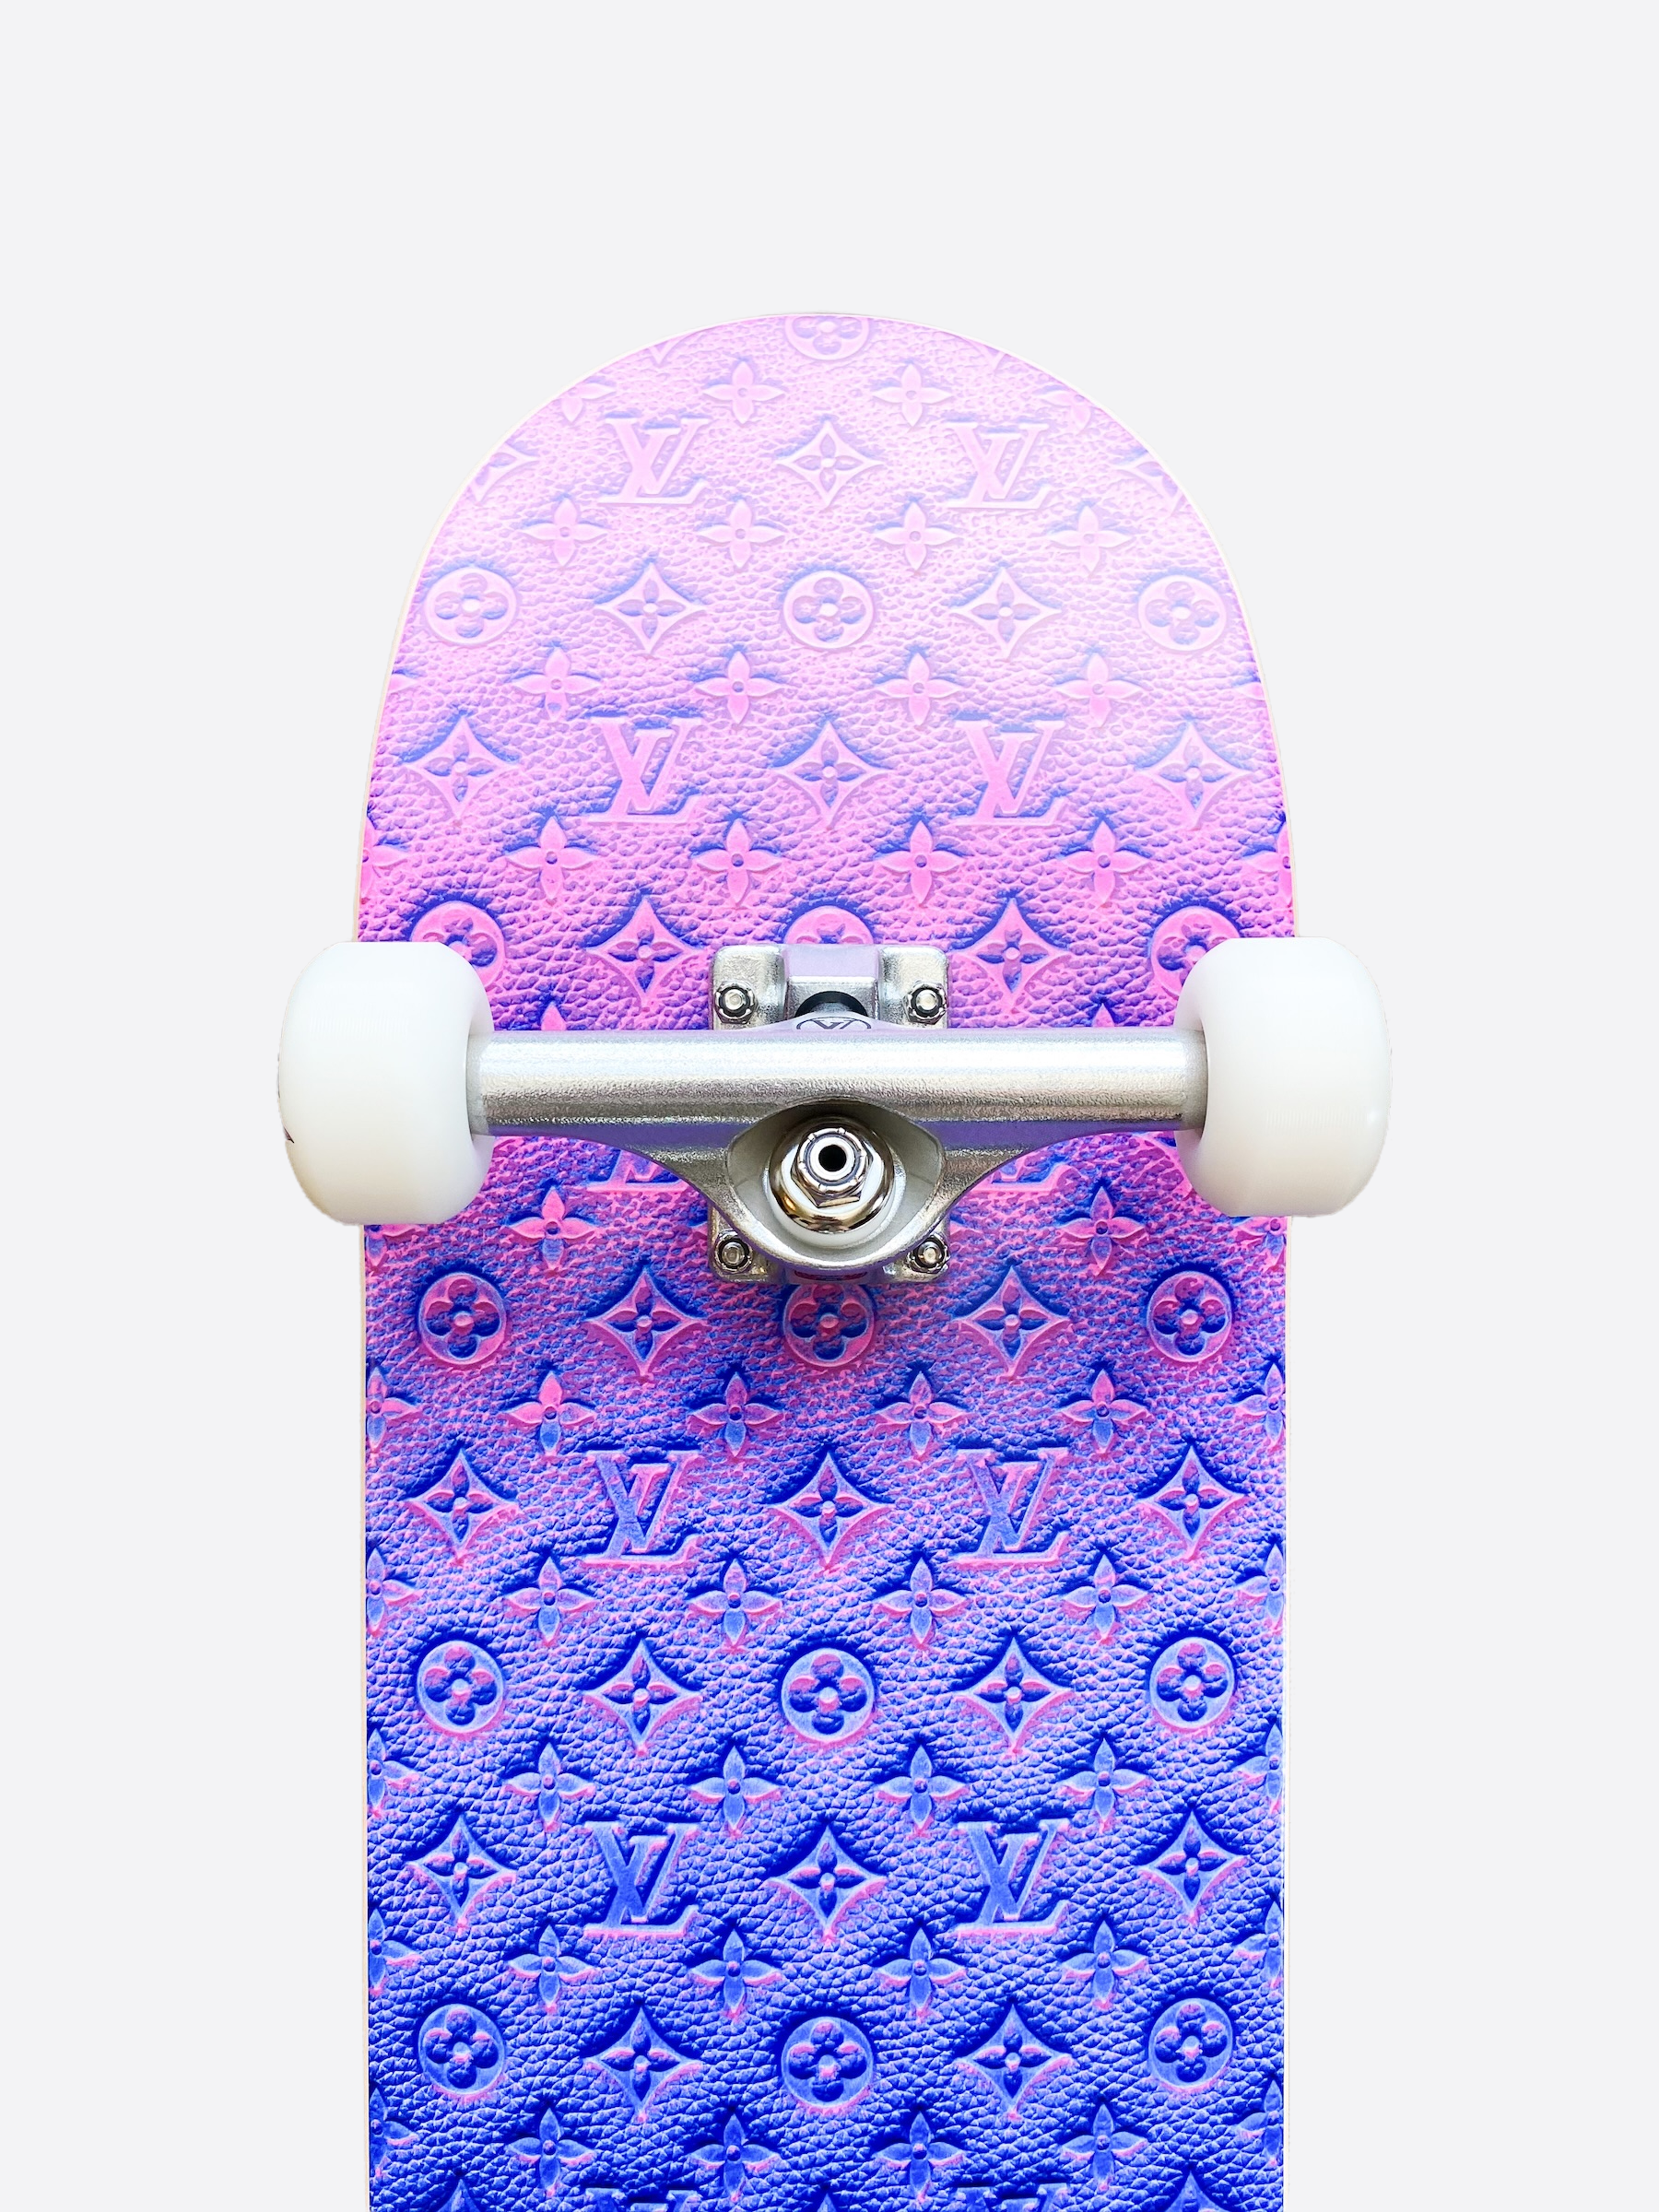 Supreme Louis Vuitton Skateboard Deck